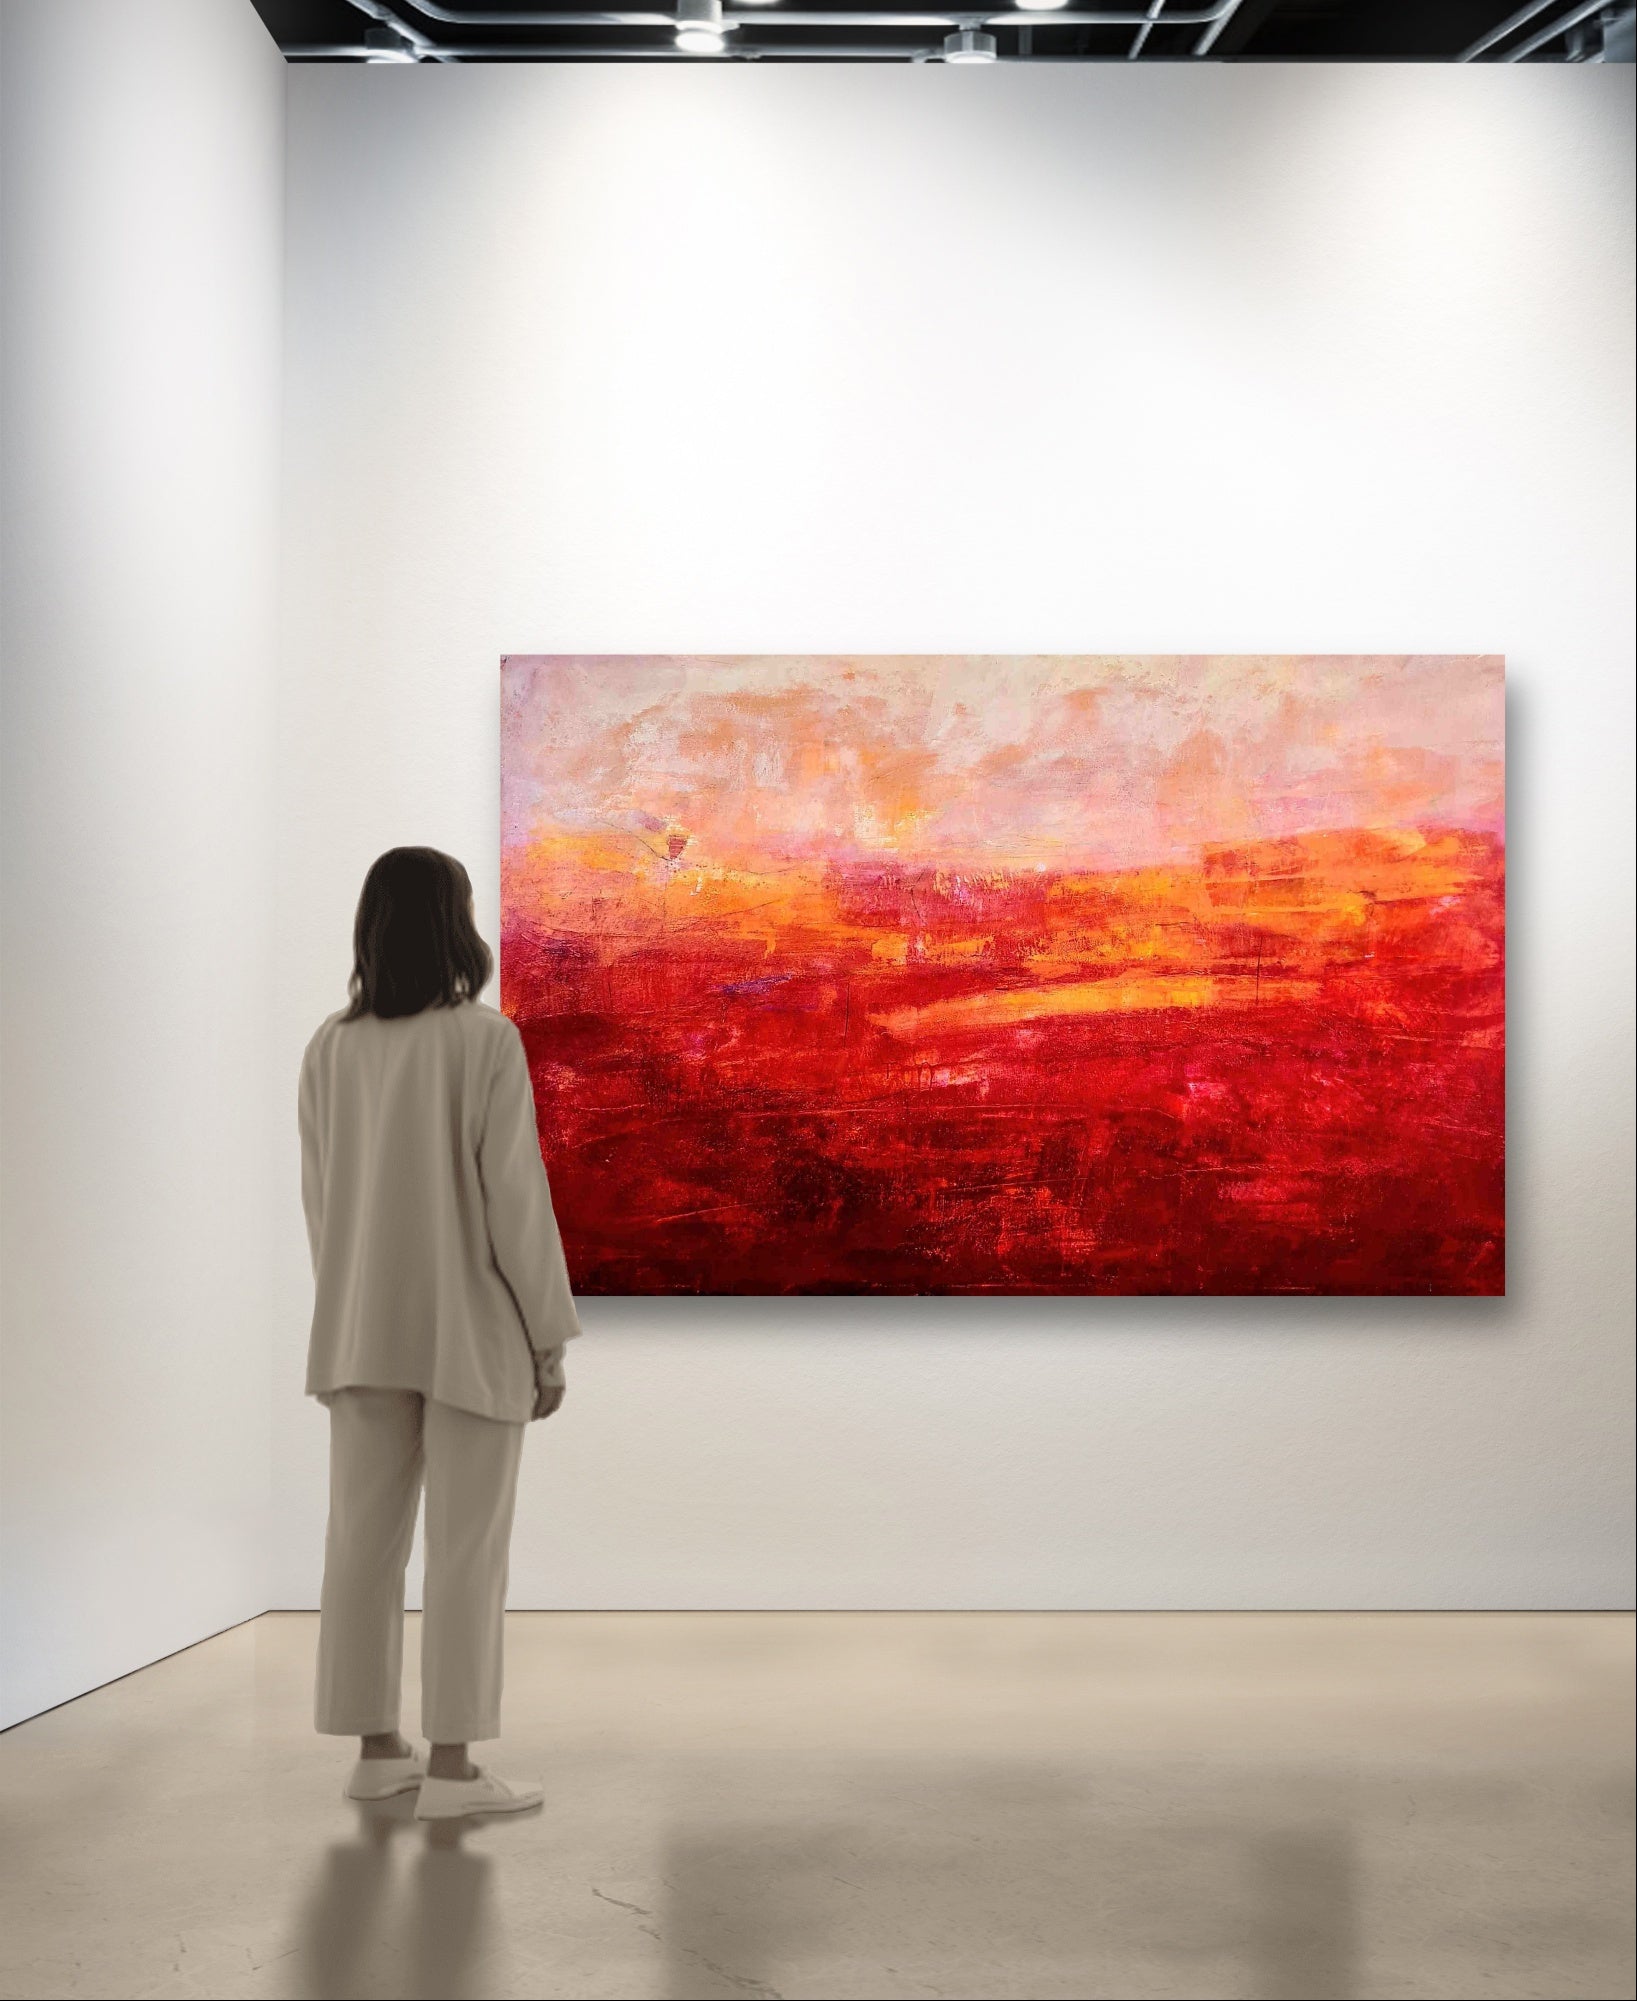 Auftragskunst, abstrakte Bilder, 200 x 135 cm - Abstrakte rote Malerei als besonderes Kunstwerk für Ihre Räumlichkeiten,rote-sehr-grosse-bilder-auf-leinwand, abstrakte Bilder kaufen ,